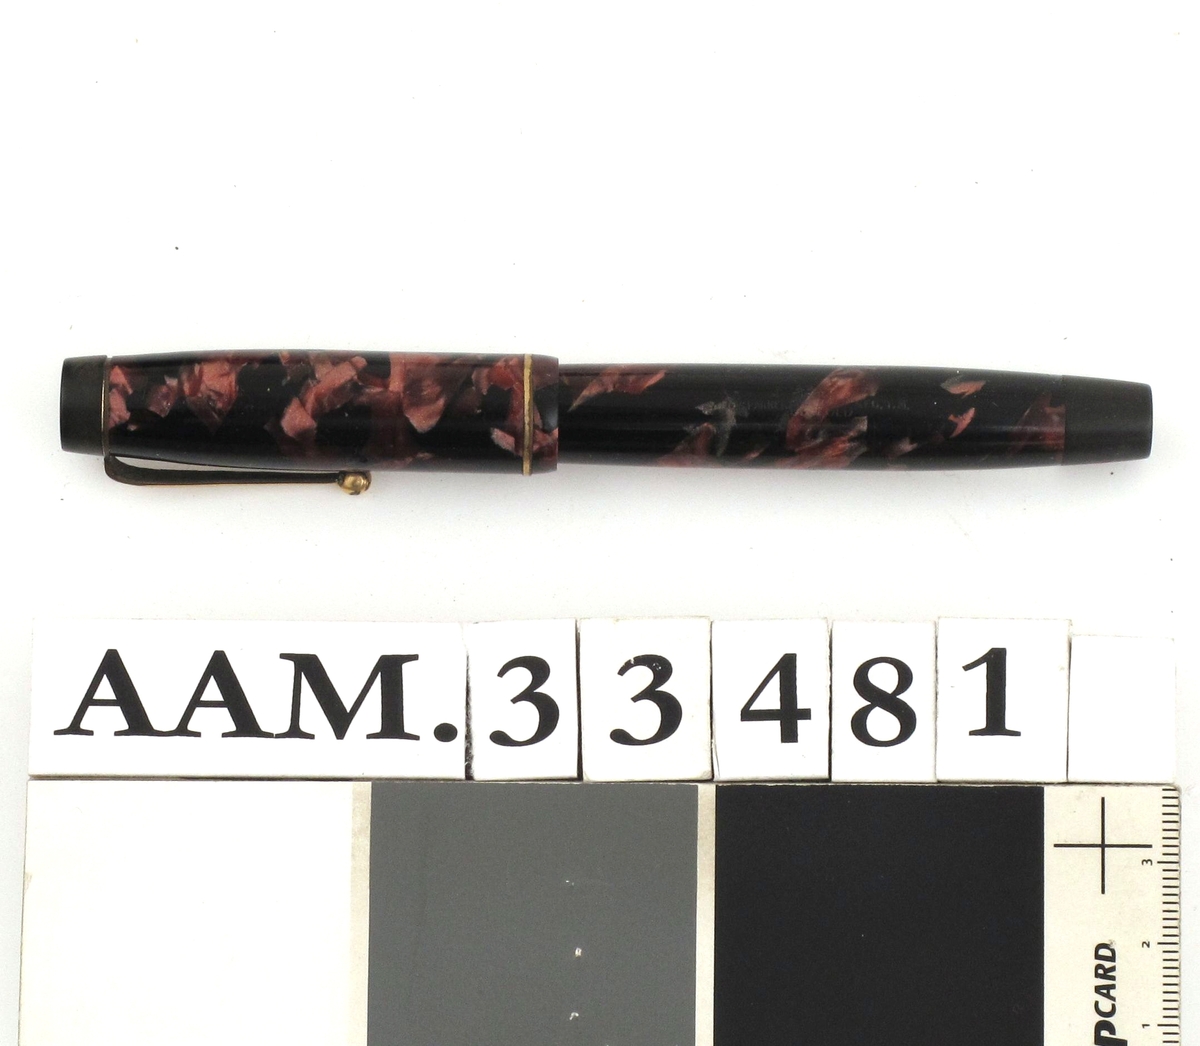 Fyllepenn, sort med mønster i rosavalører.
Pennen inneholder en beholder og blekk suges opp i beholderen fra et blekkhus.